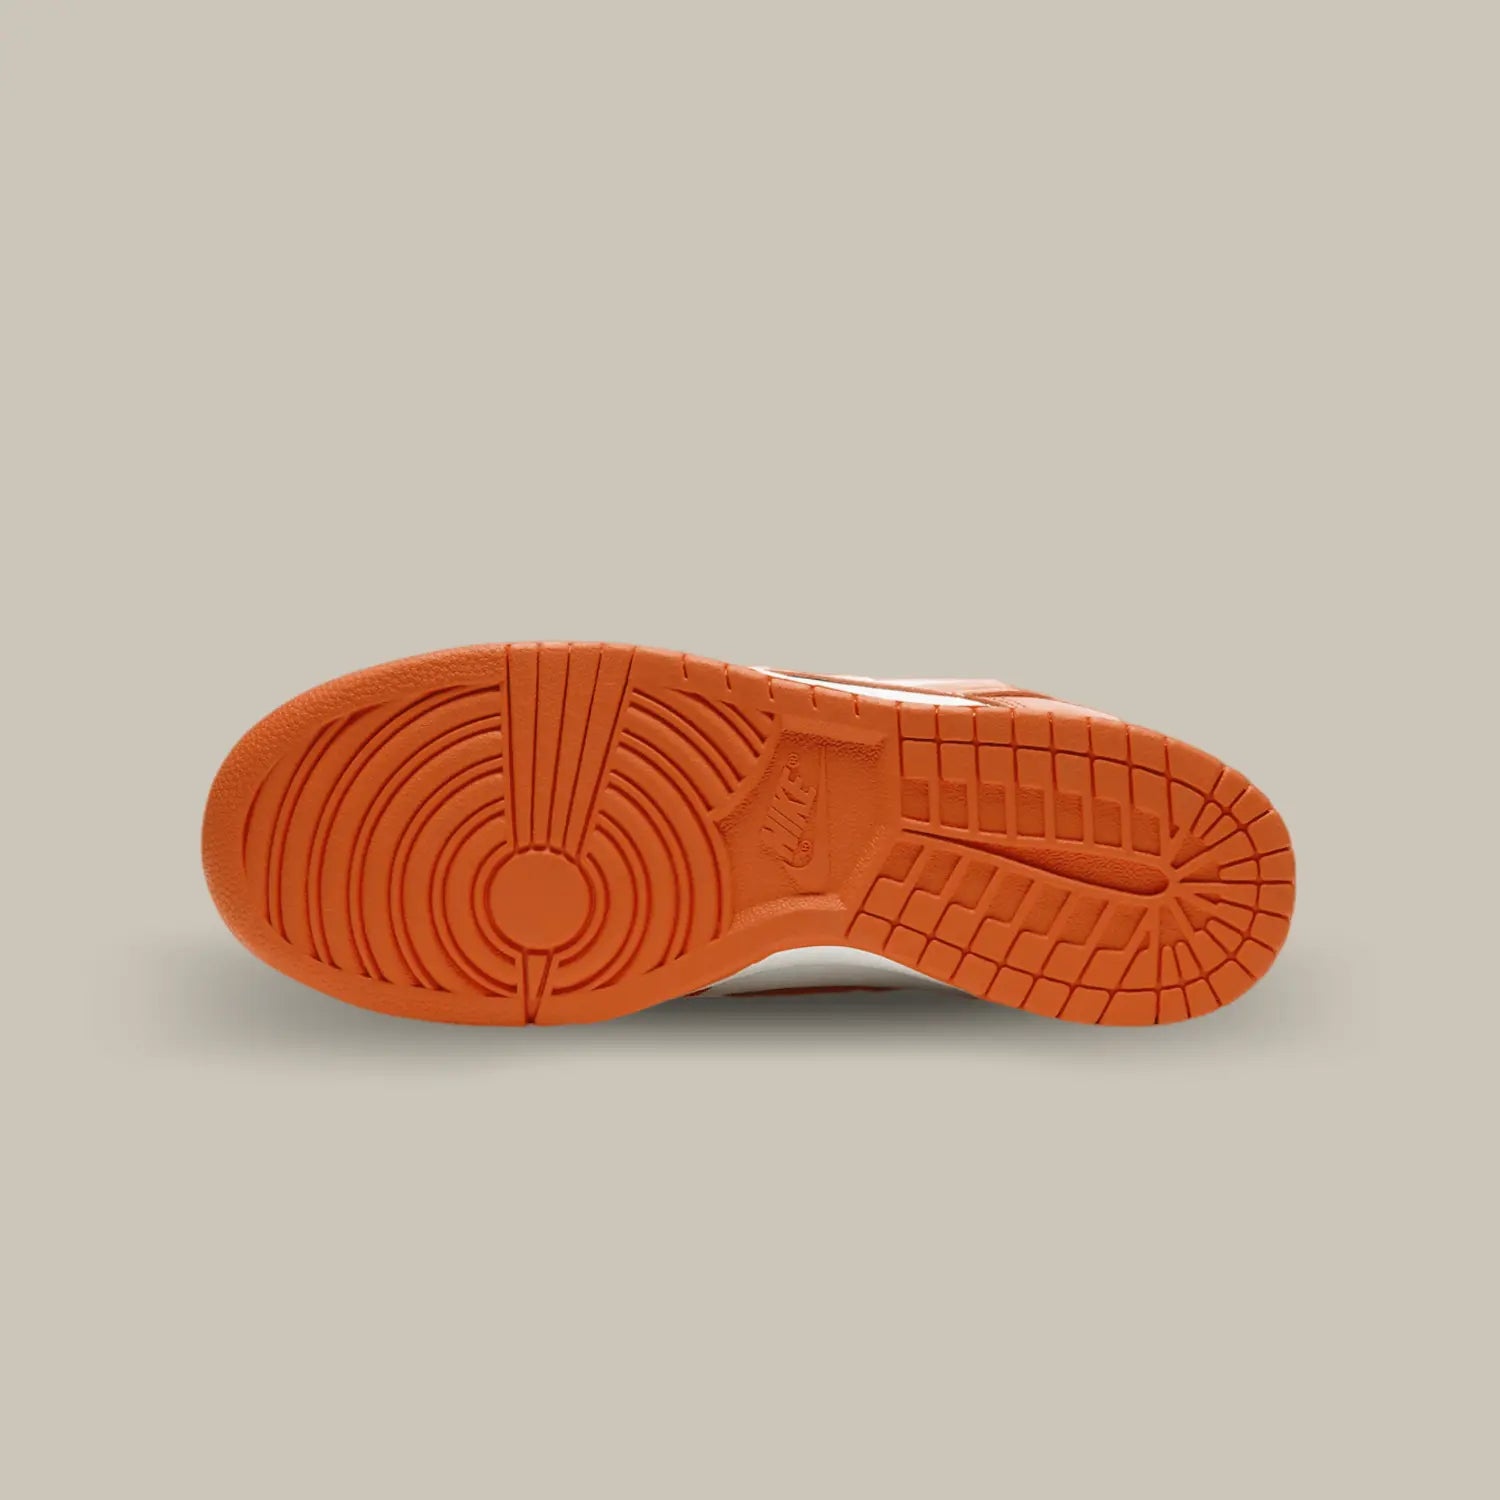 La semelle de la Nike Dunk Low Syracuse de couleur orange.